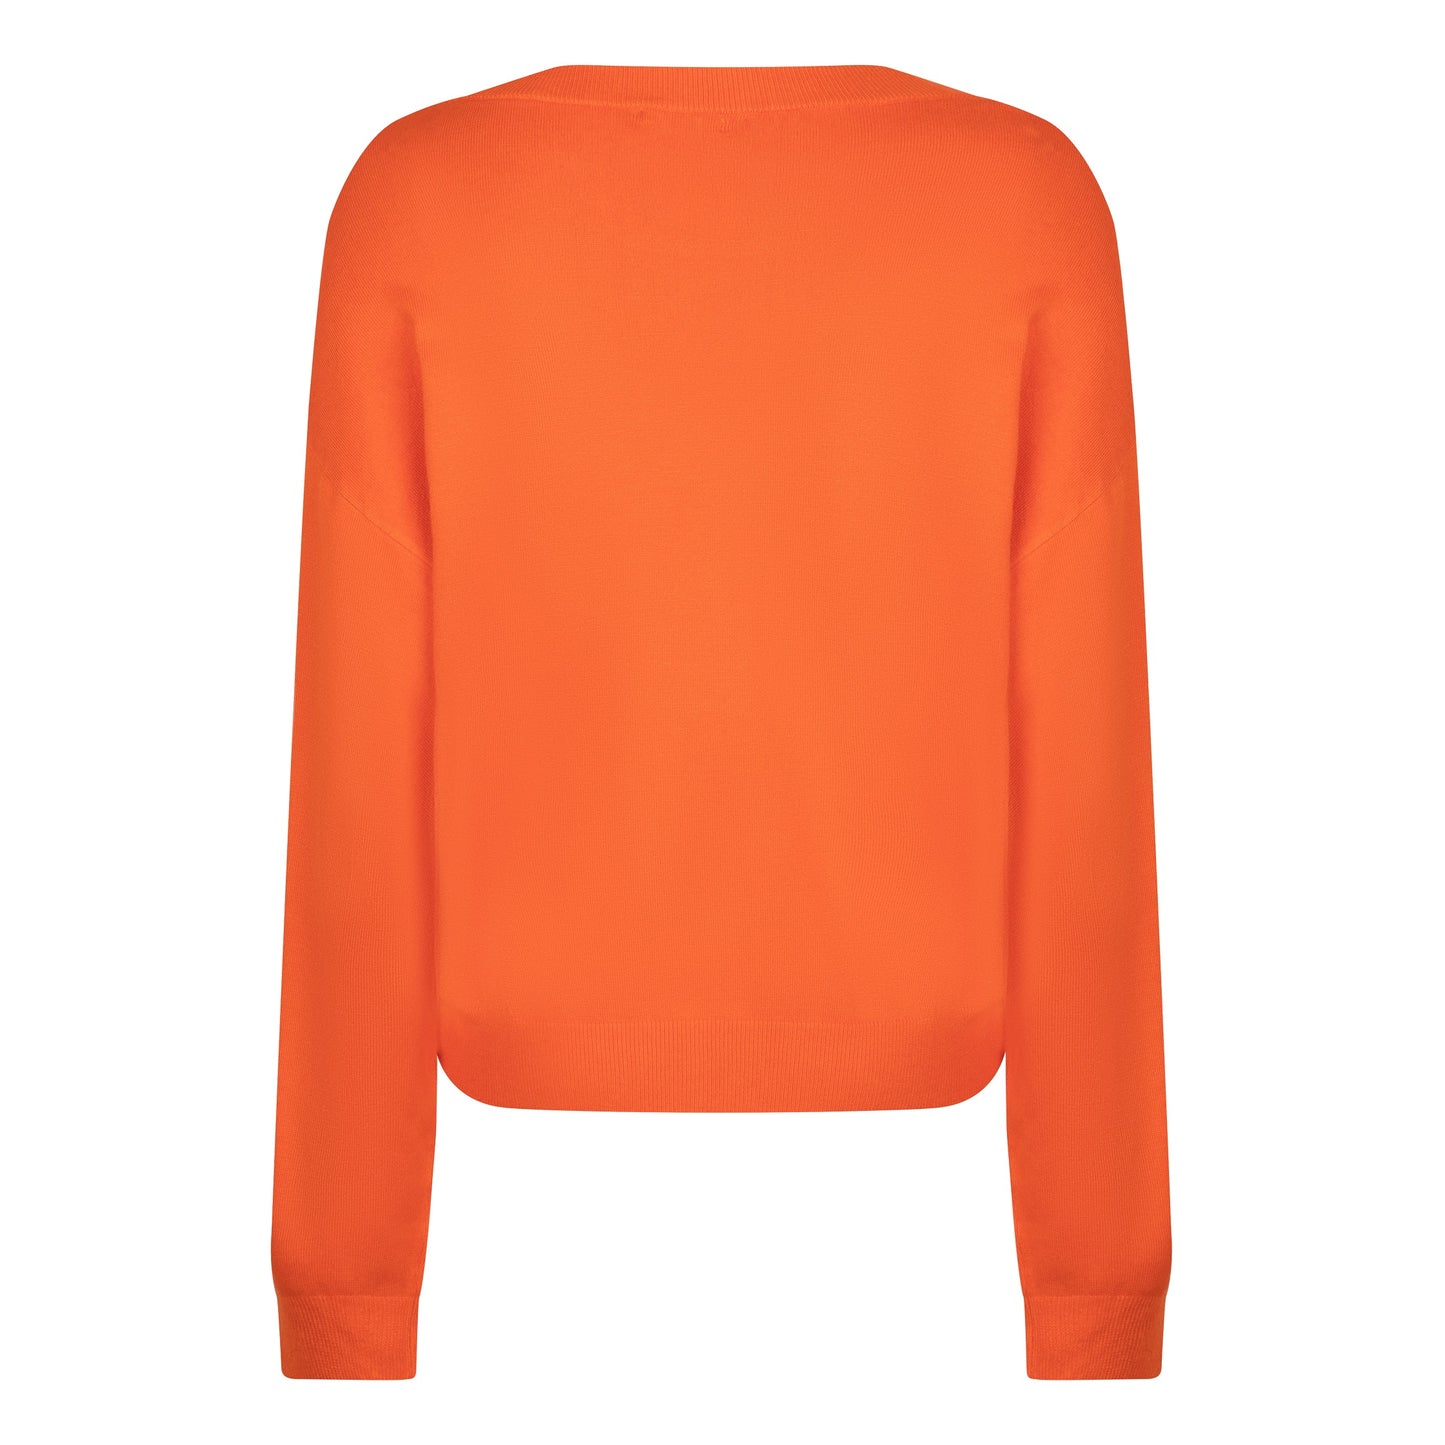 ESQUALO Bold Orange Longsleeve Knit